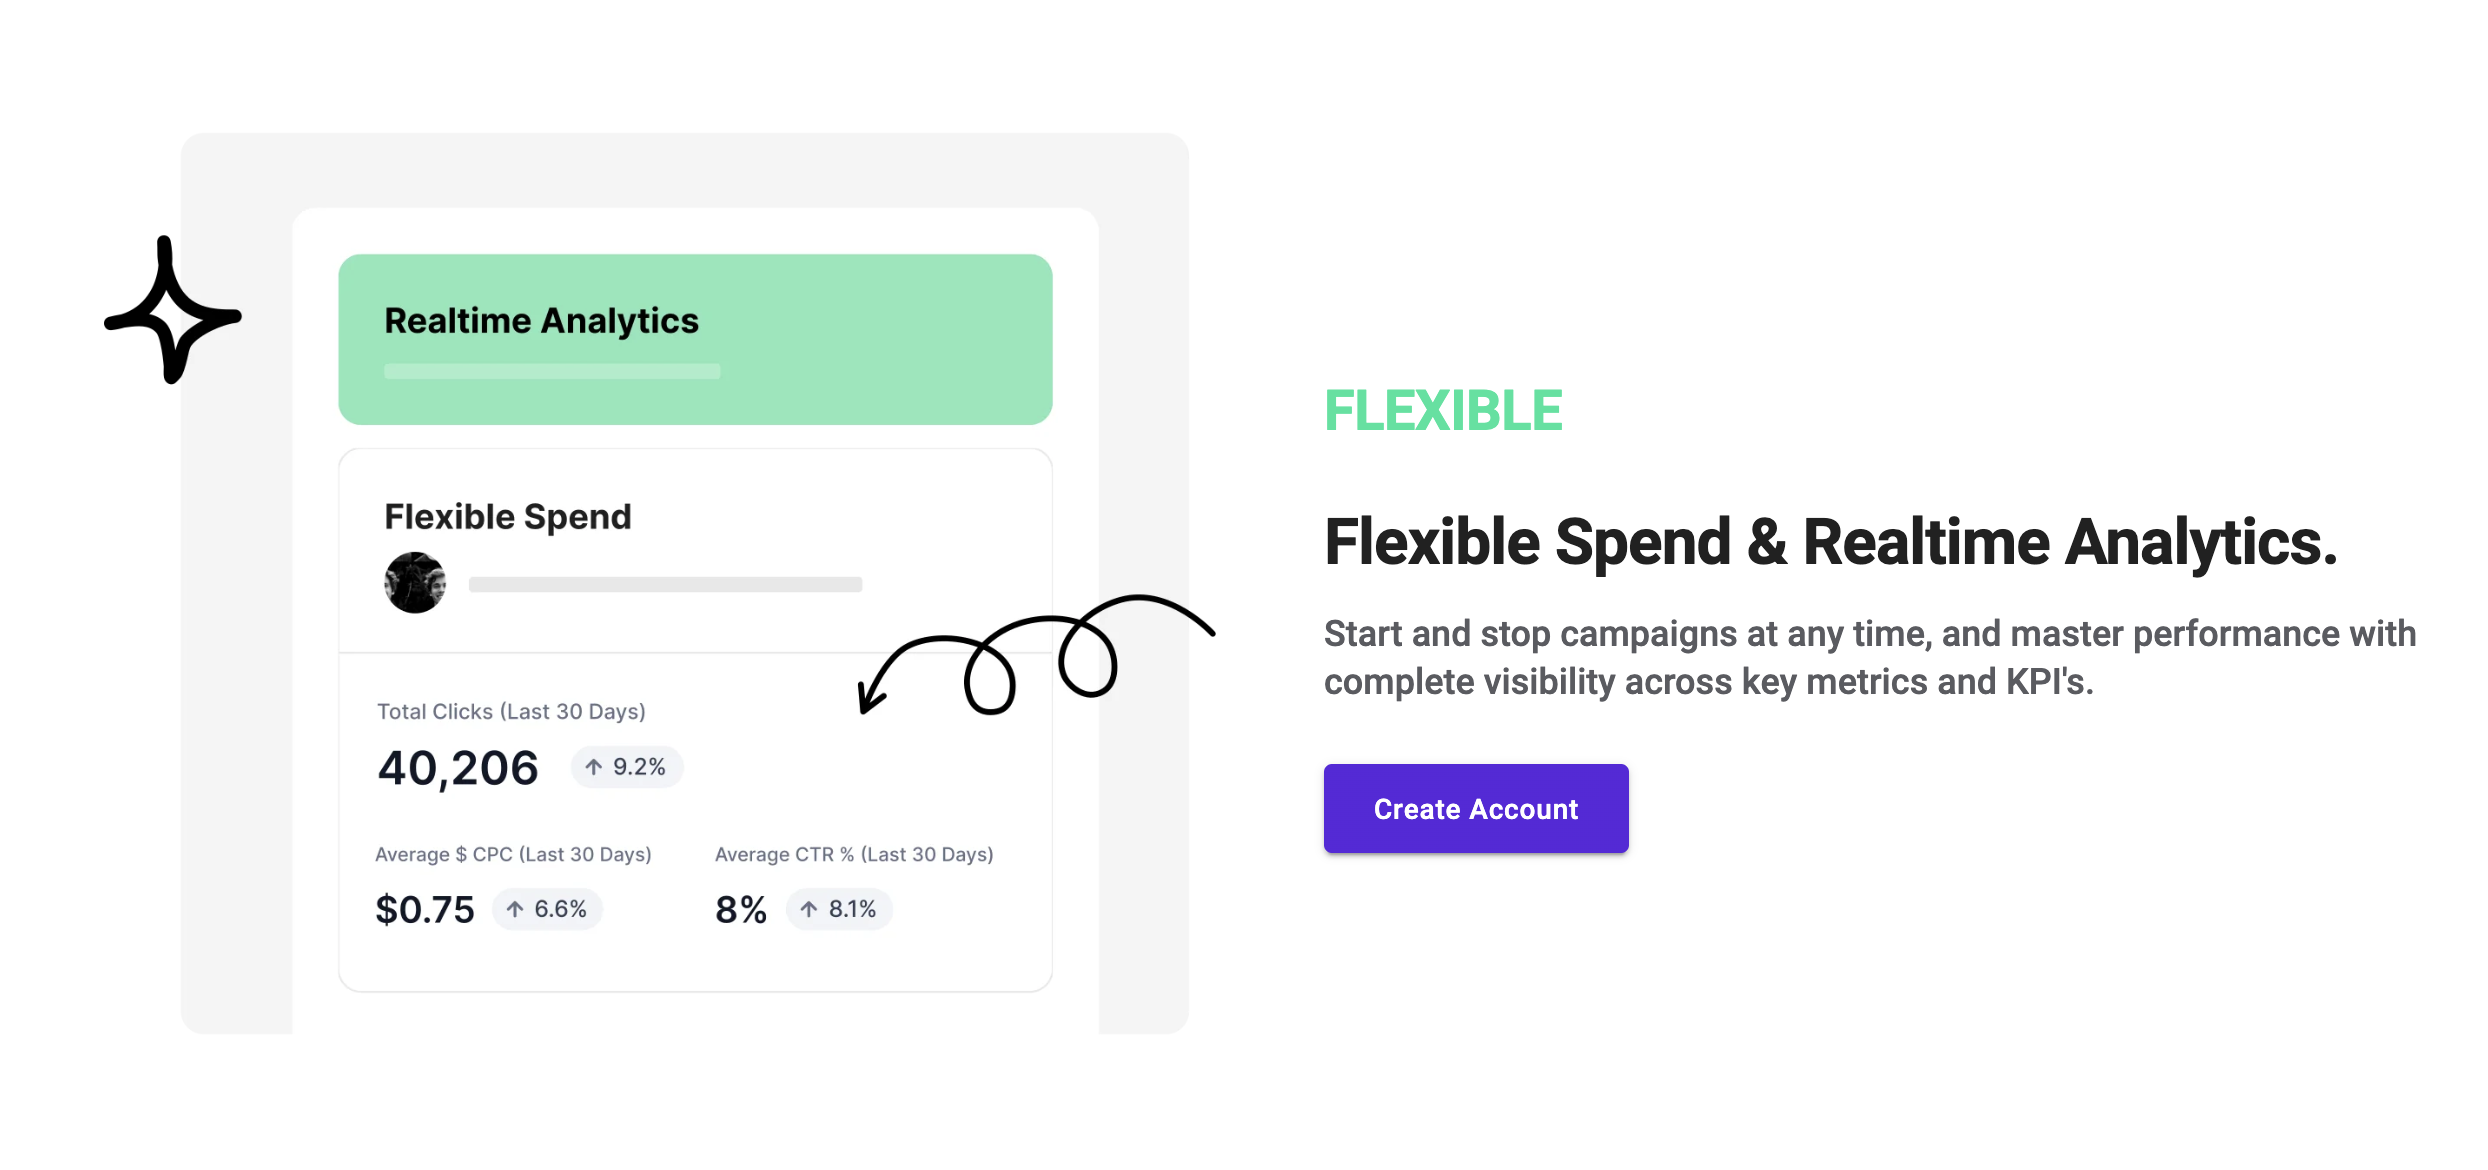 Flexible Spend